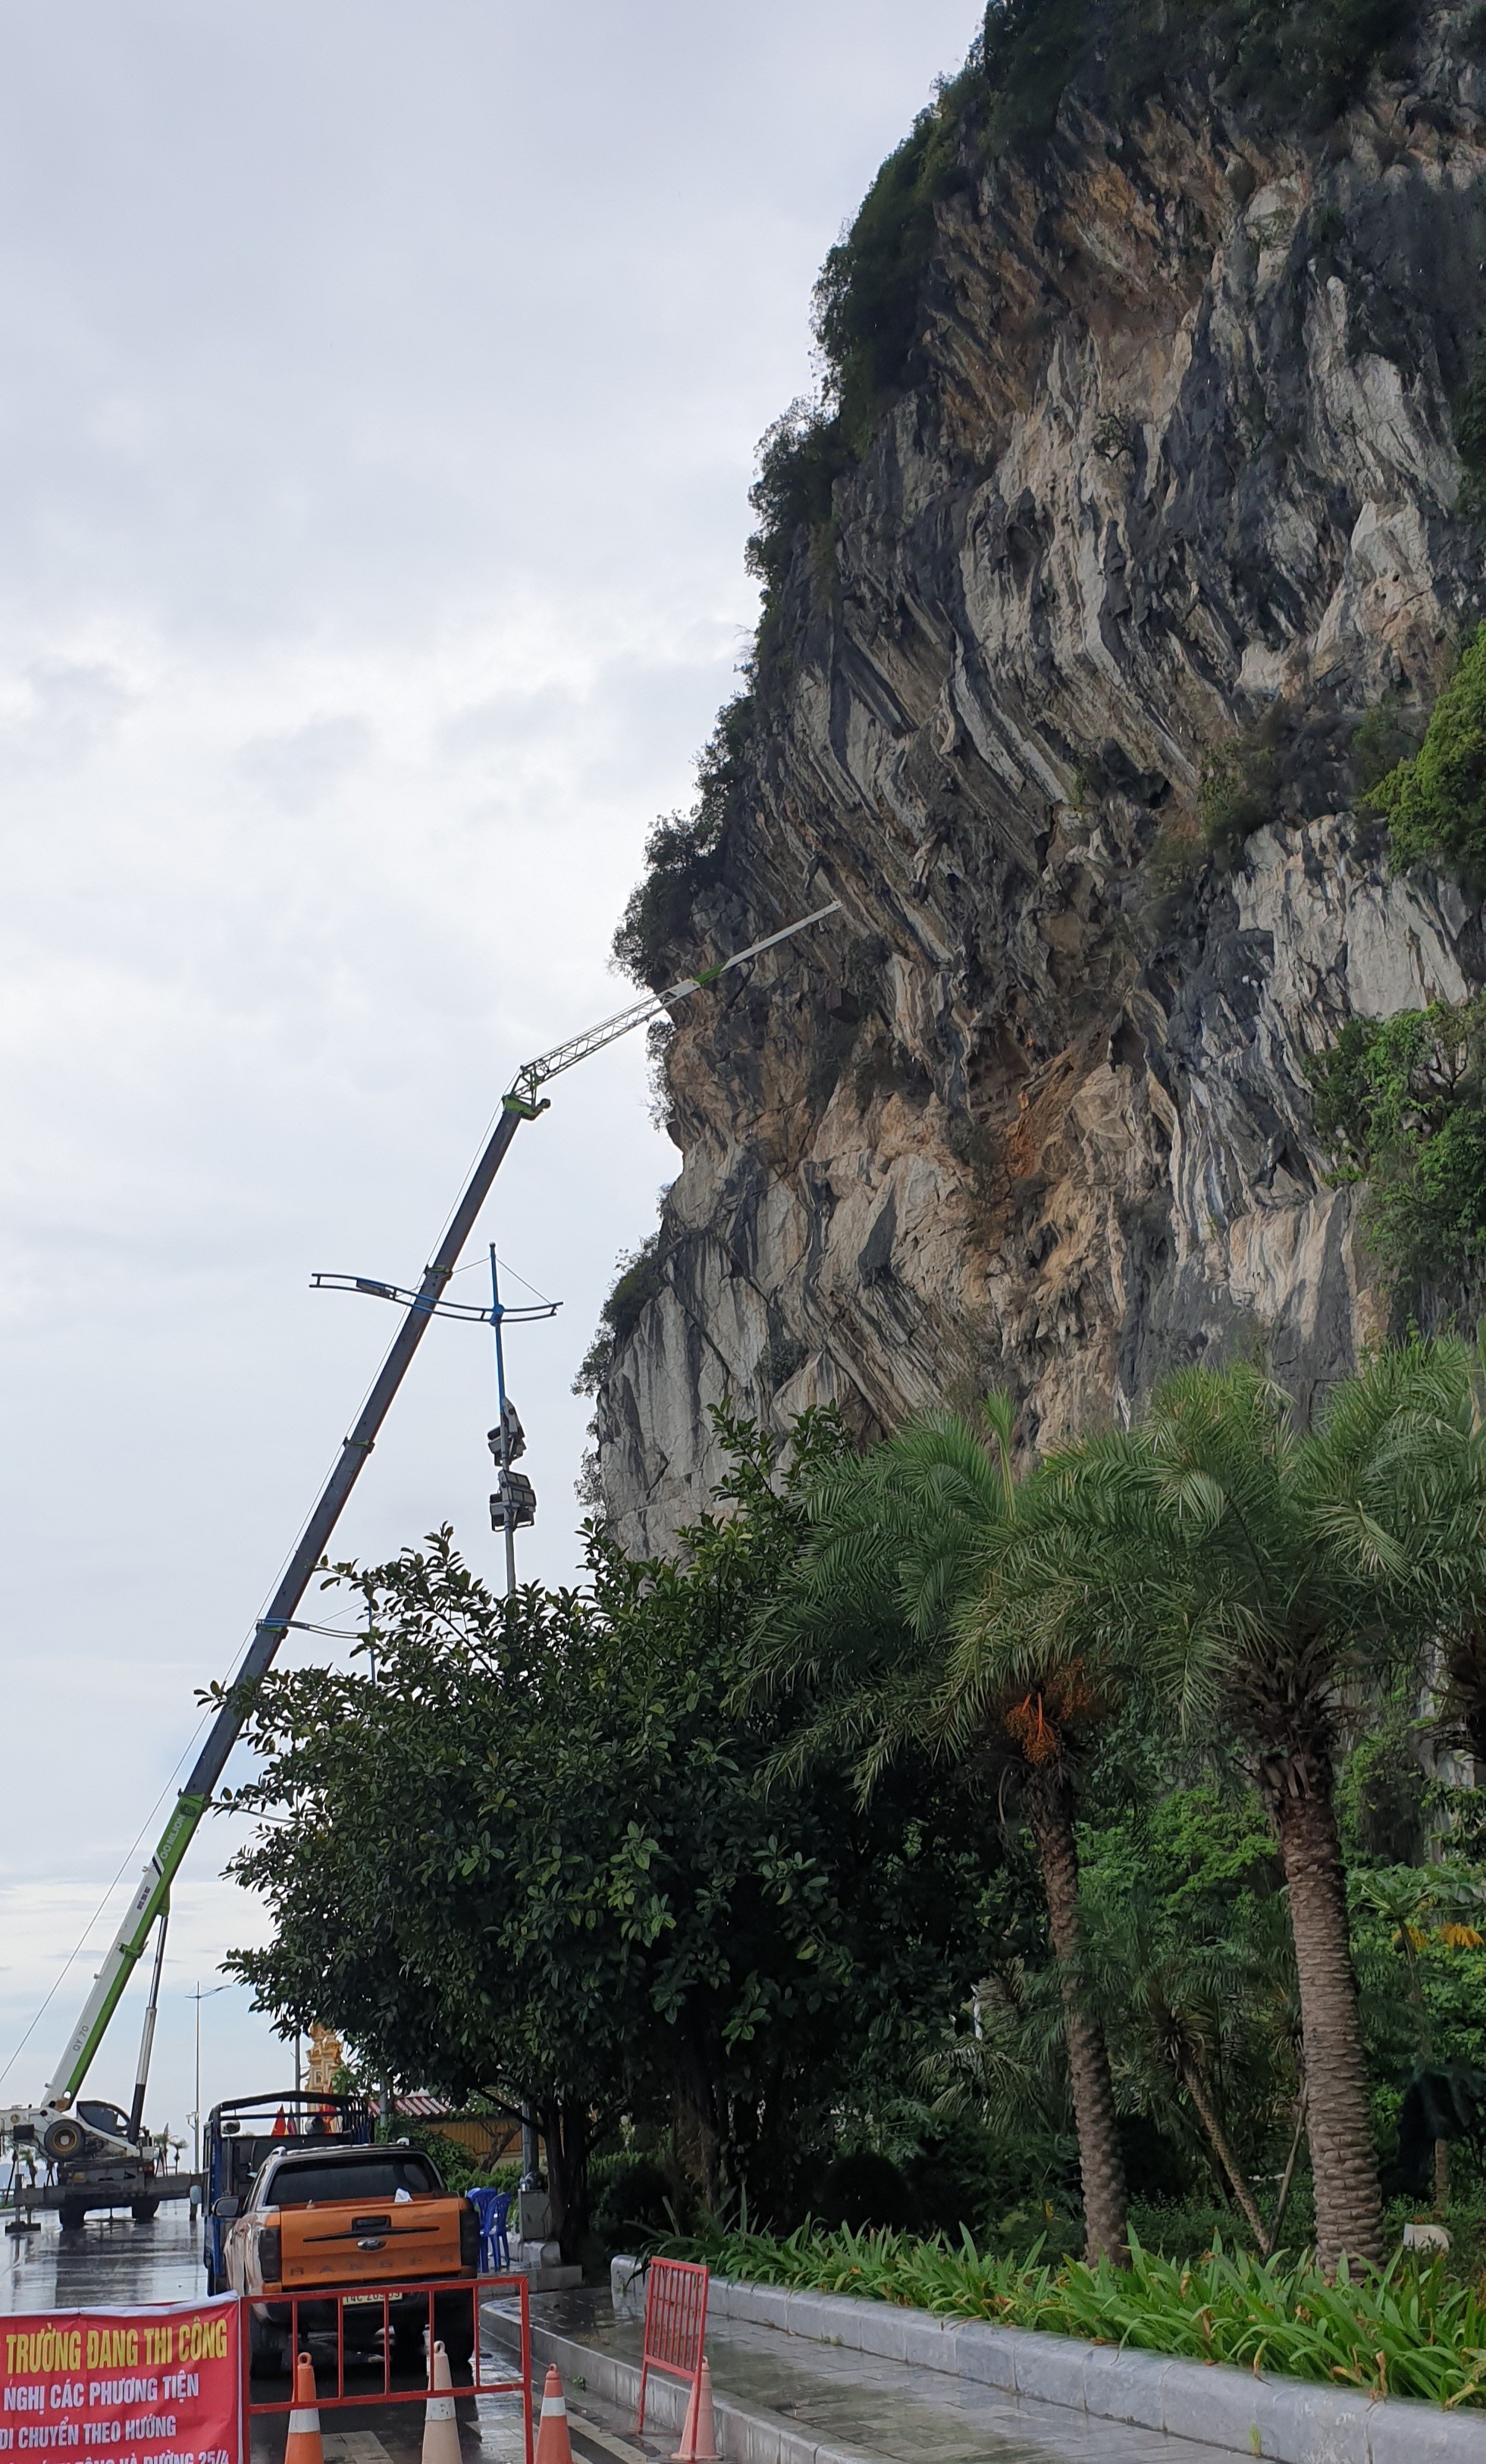 Sử dụng xe cẩu với cần cẩu dài để đưa công nhân lên lưng chừng núi để xử lý điểm có nguy cơ sạt lở. Ảnh: Nguyễn Hùng